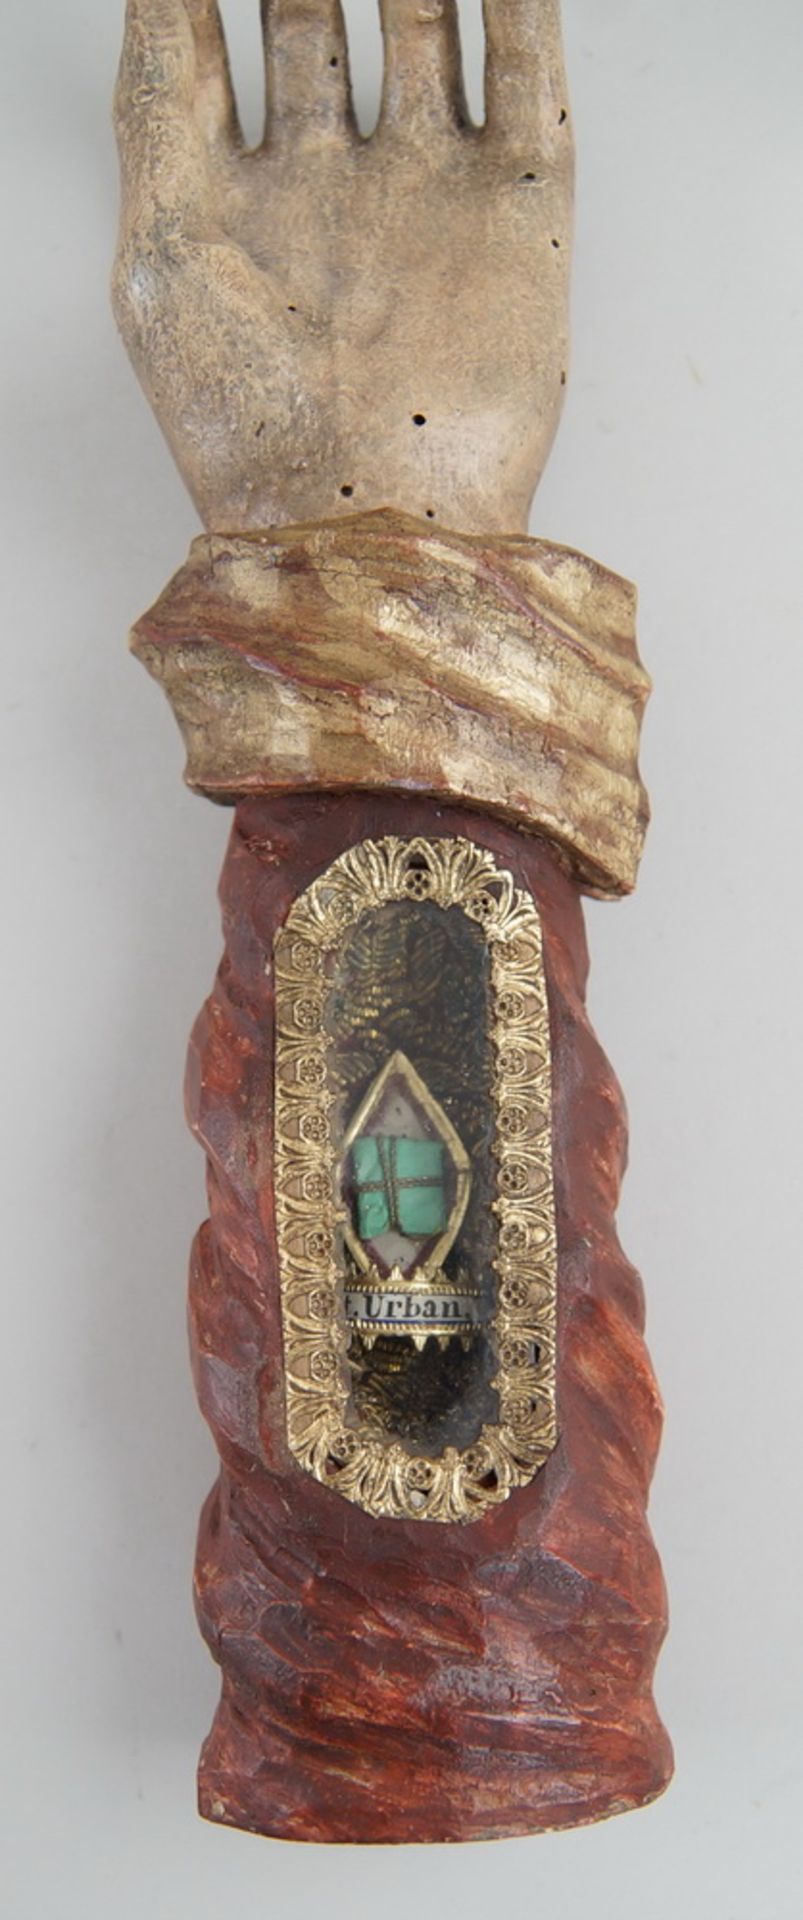 Grosse Reliquienhand, Holz geschnitzt und gefasst, Reliquie hinter Glas, St. Urban, H 31cm - Bild 2 aus 6